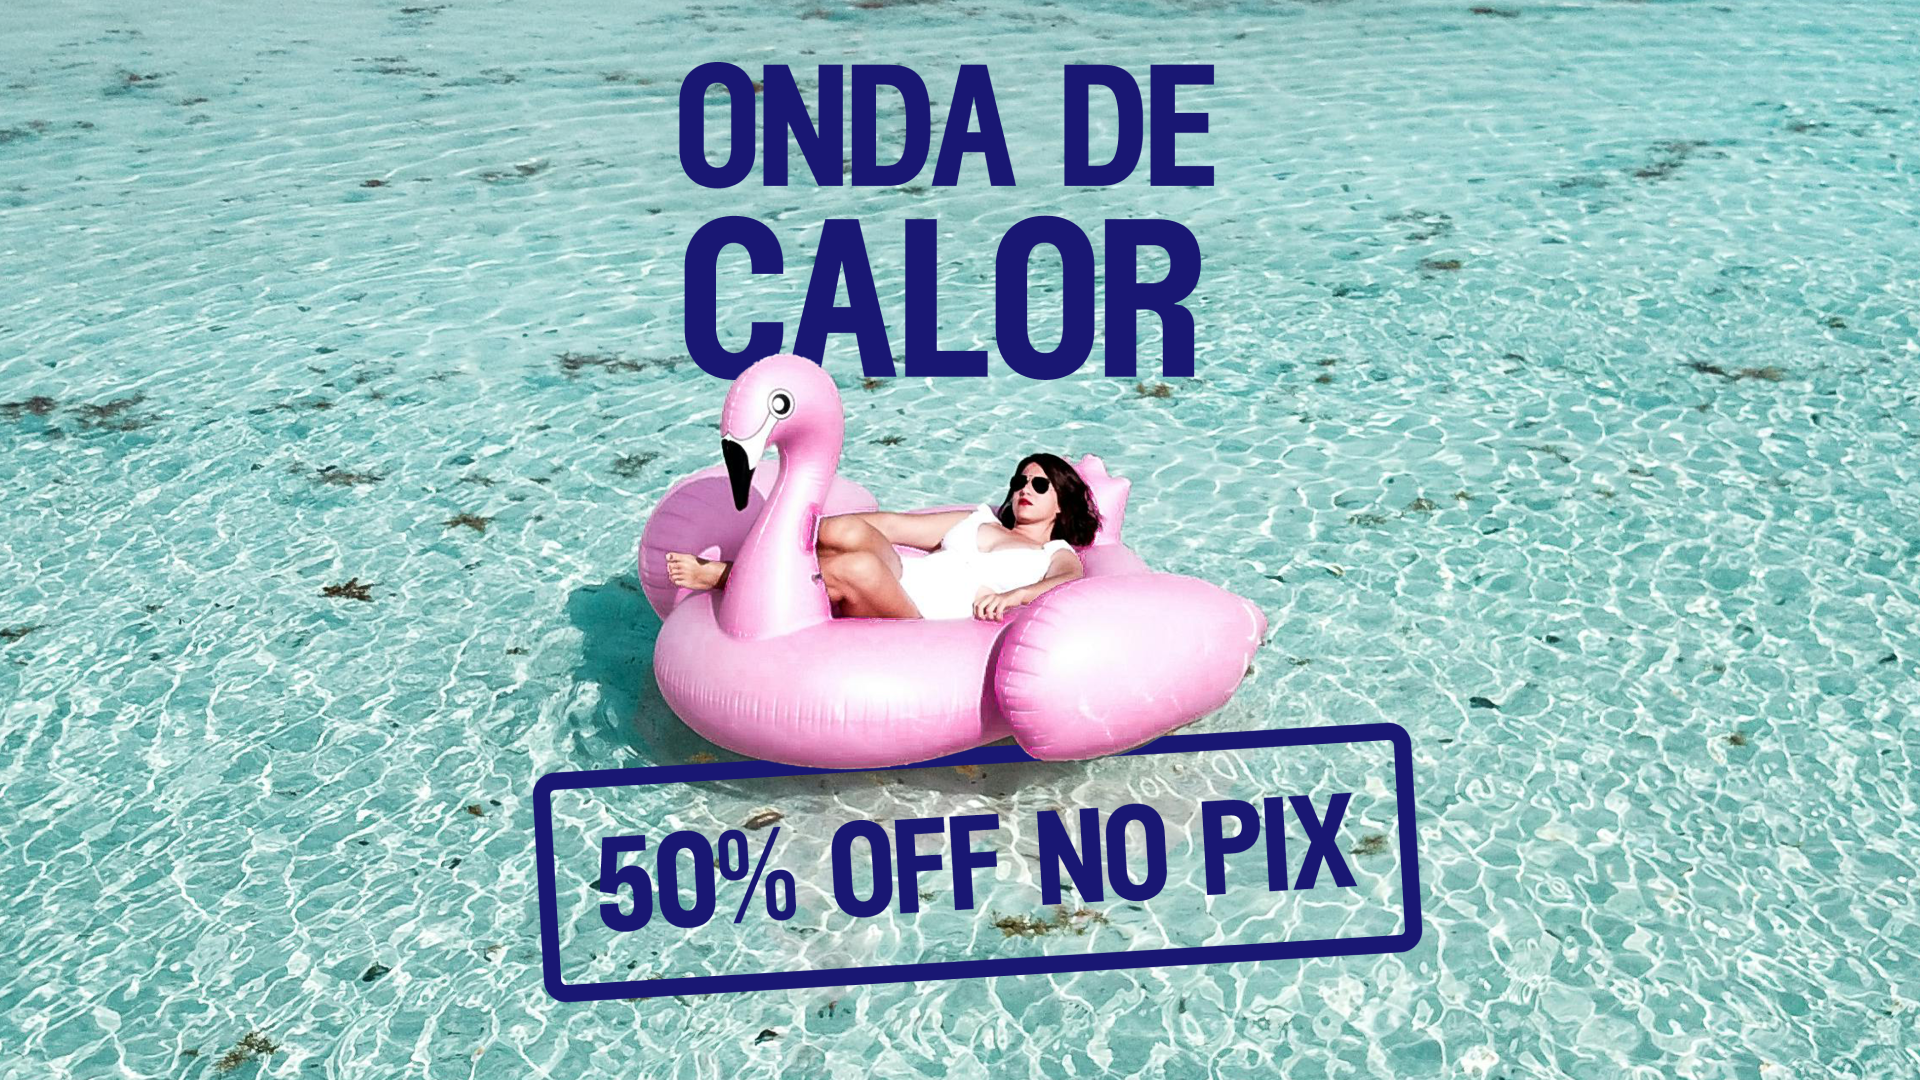 Uma mulher relaxando em uma boia rosa em forma de flamingo em águas cristalinas com texto promocional "ONDA DE CALOR" e "50% OFF NO PIX" em destaque.